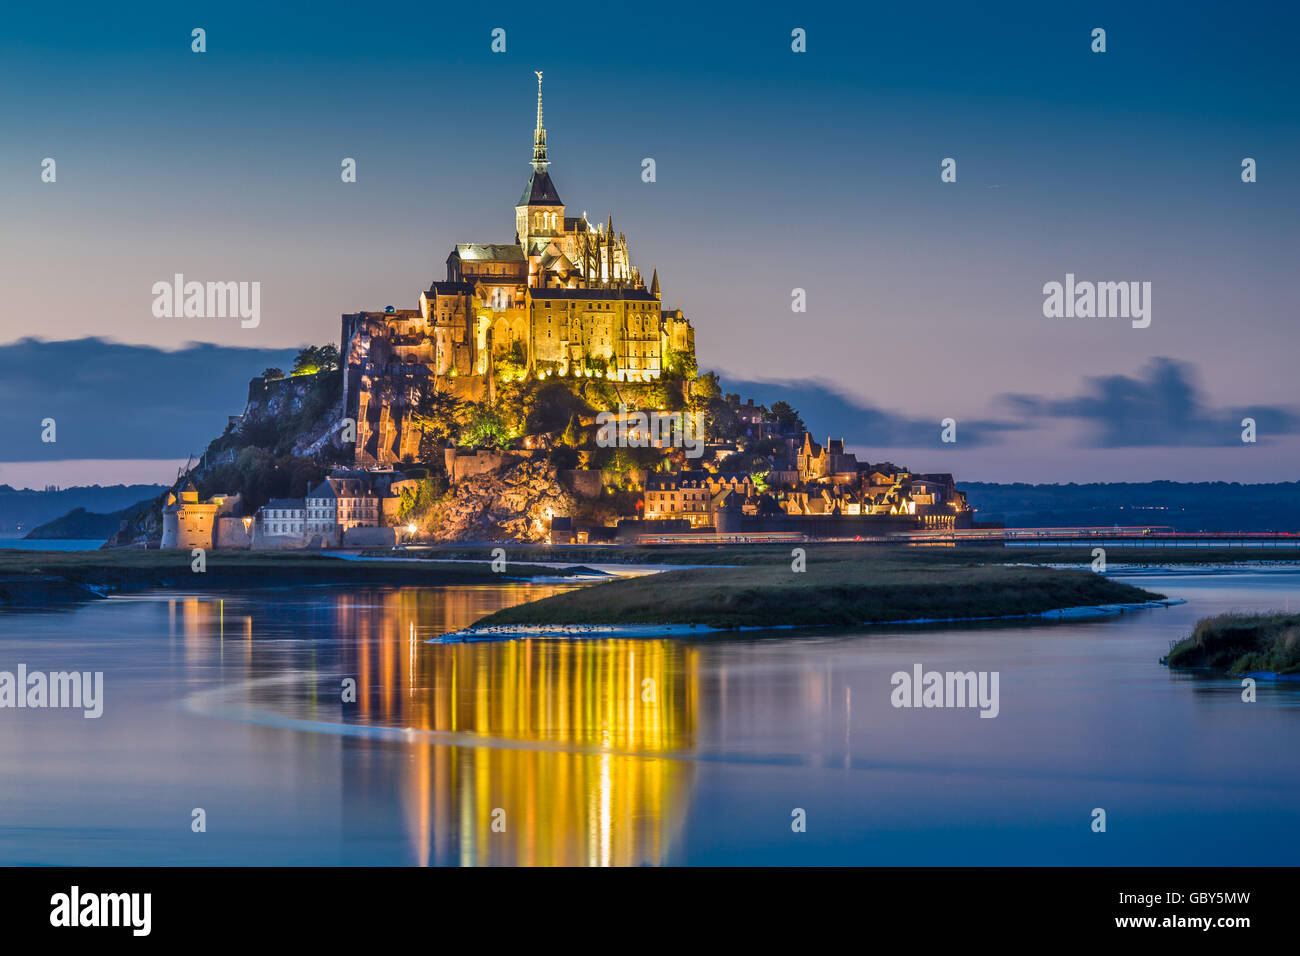 La vue classique du célèbre Le Mont Saint-Michel tidal Island dans le magnifique crépuscule pendant heure bleue au crépuscule, Normandie, France Banque D'Images